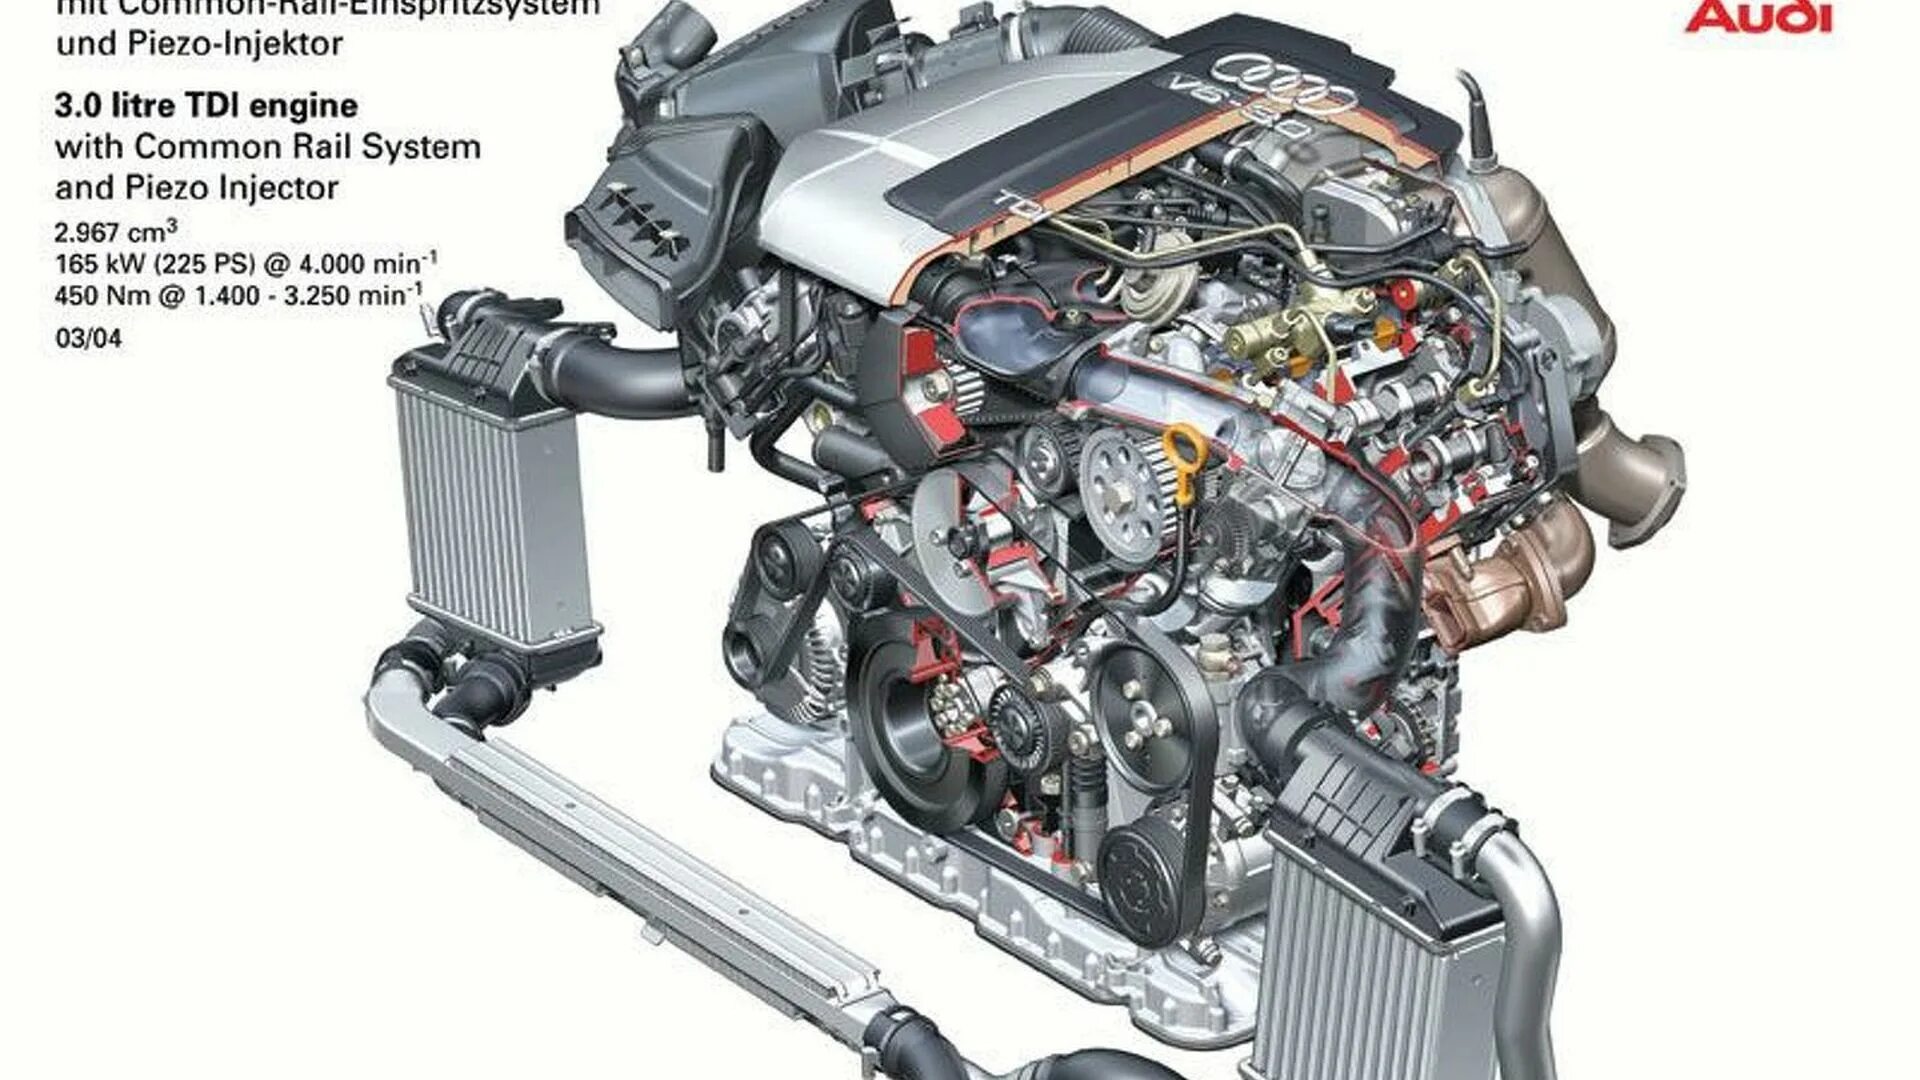 3 000 с 6 000 2. Двигатель Ауди v6 4.2 TDI. Audi a6 2.0 Diesel мотор. 3.0 TDI Audi двигатель. Система охлаждения двигателя Ауди q7 4,2tdi.